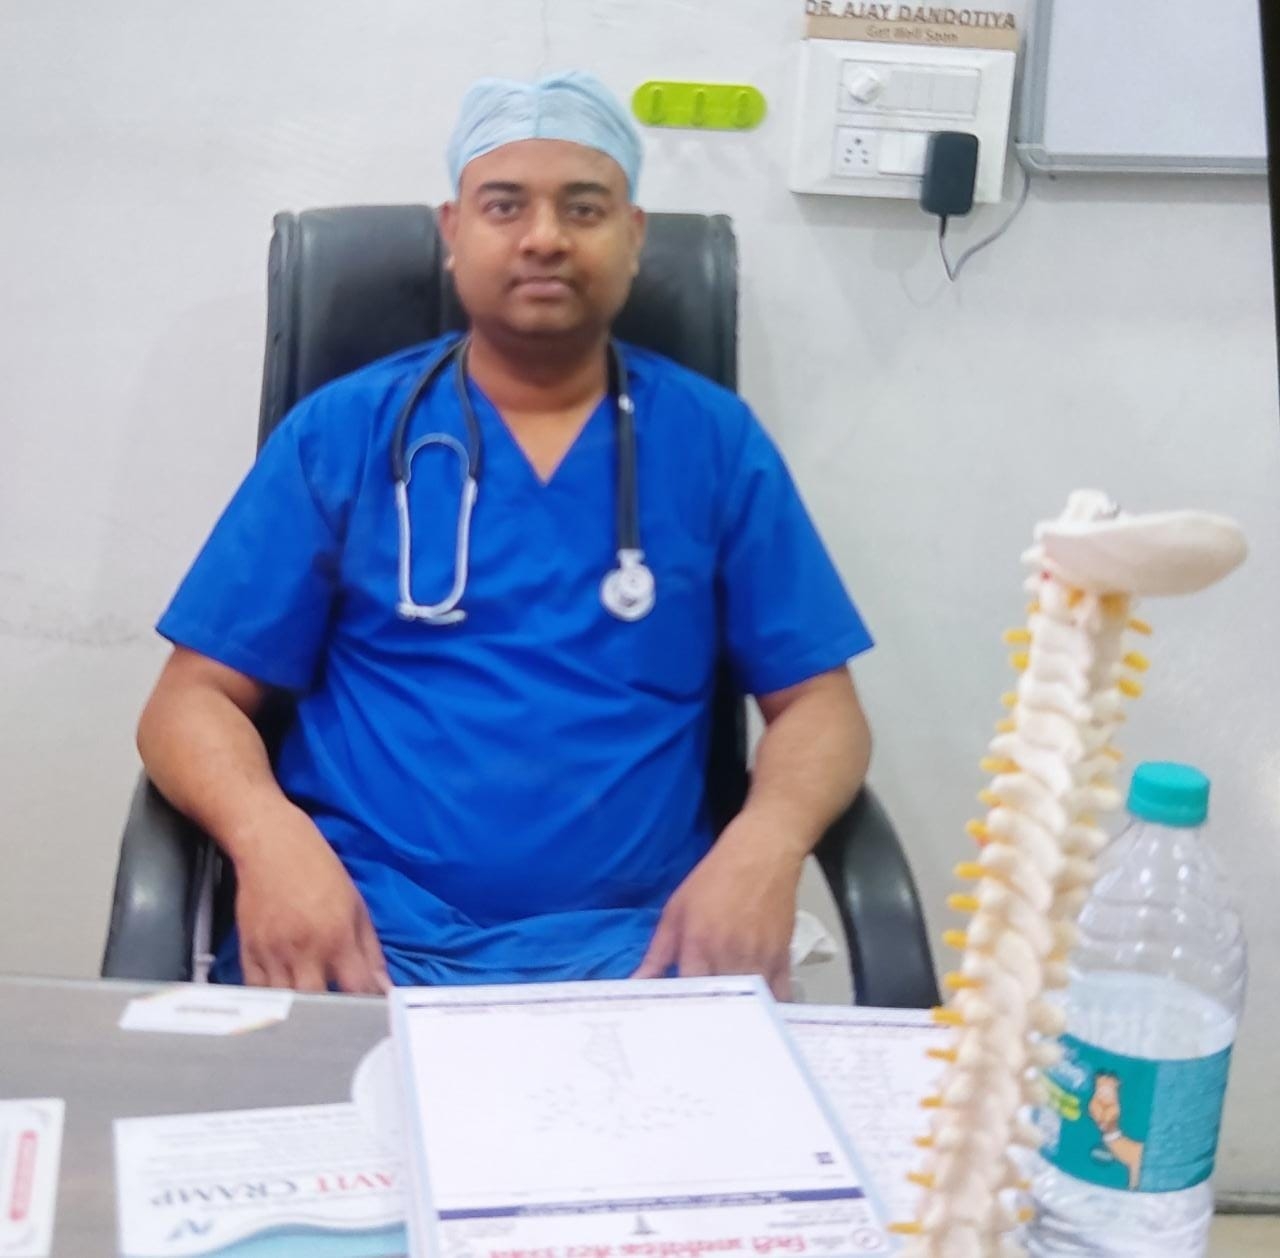 Dr. Ajay Dandotiya